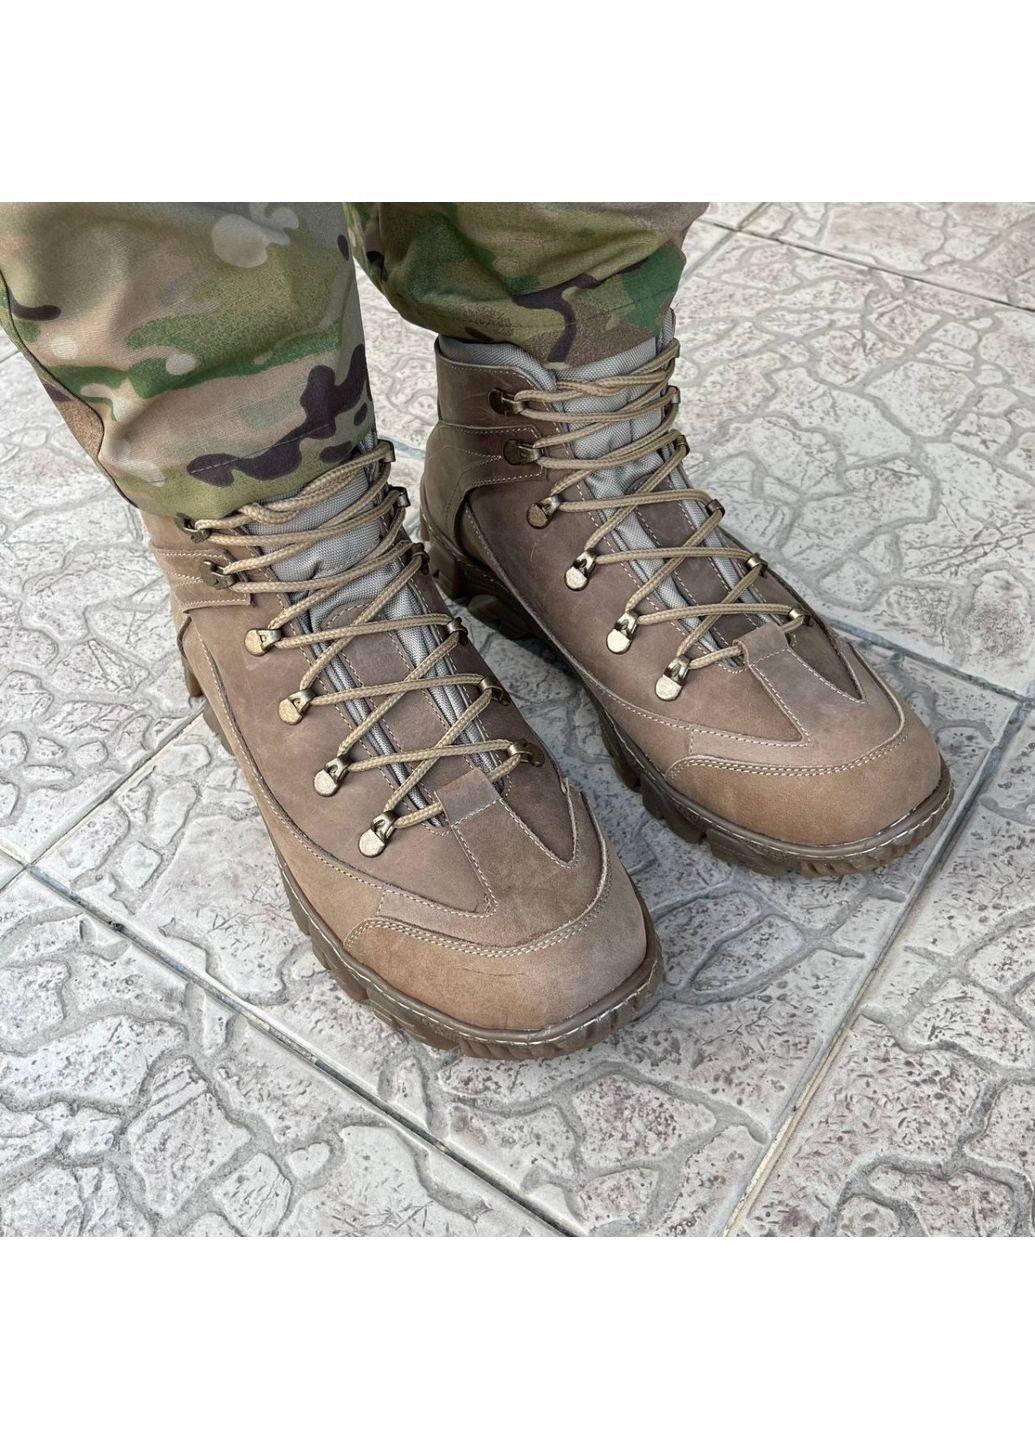 Коричневые осенние ботинки военные тактические всу (зсу) 7523 44 р 29 см коричневые KNF